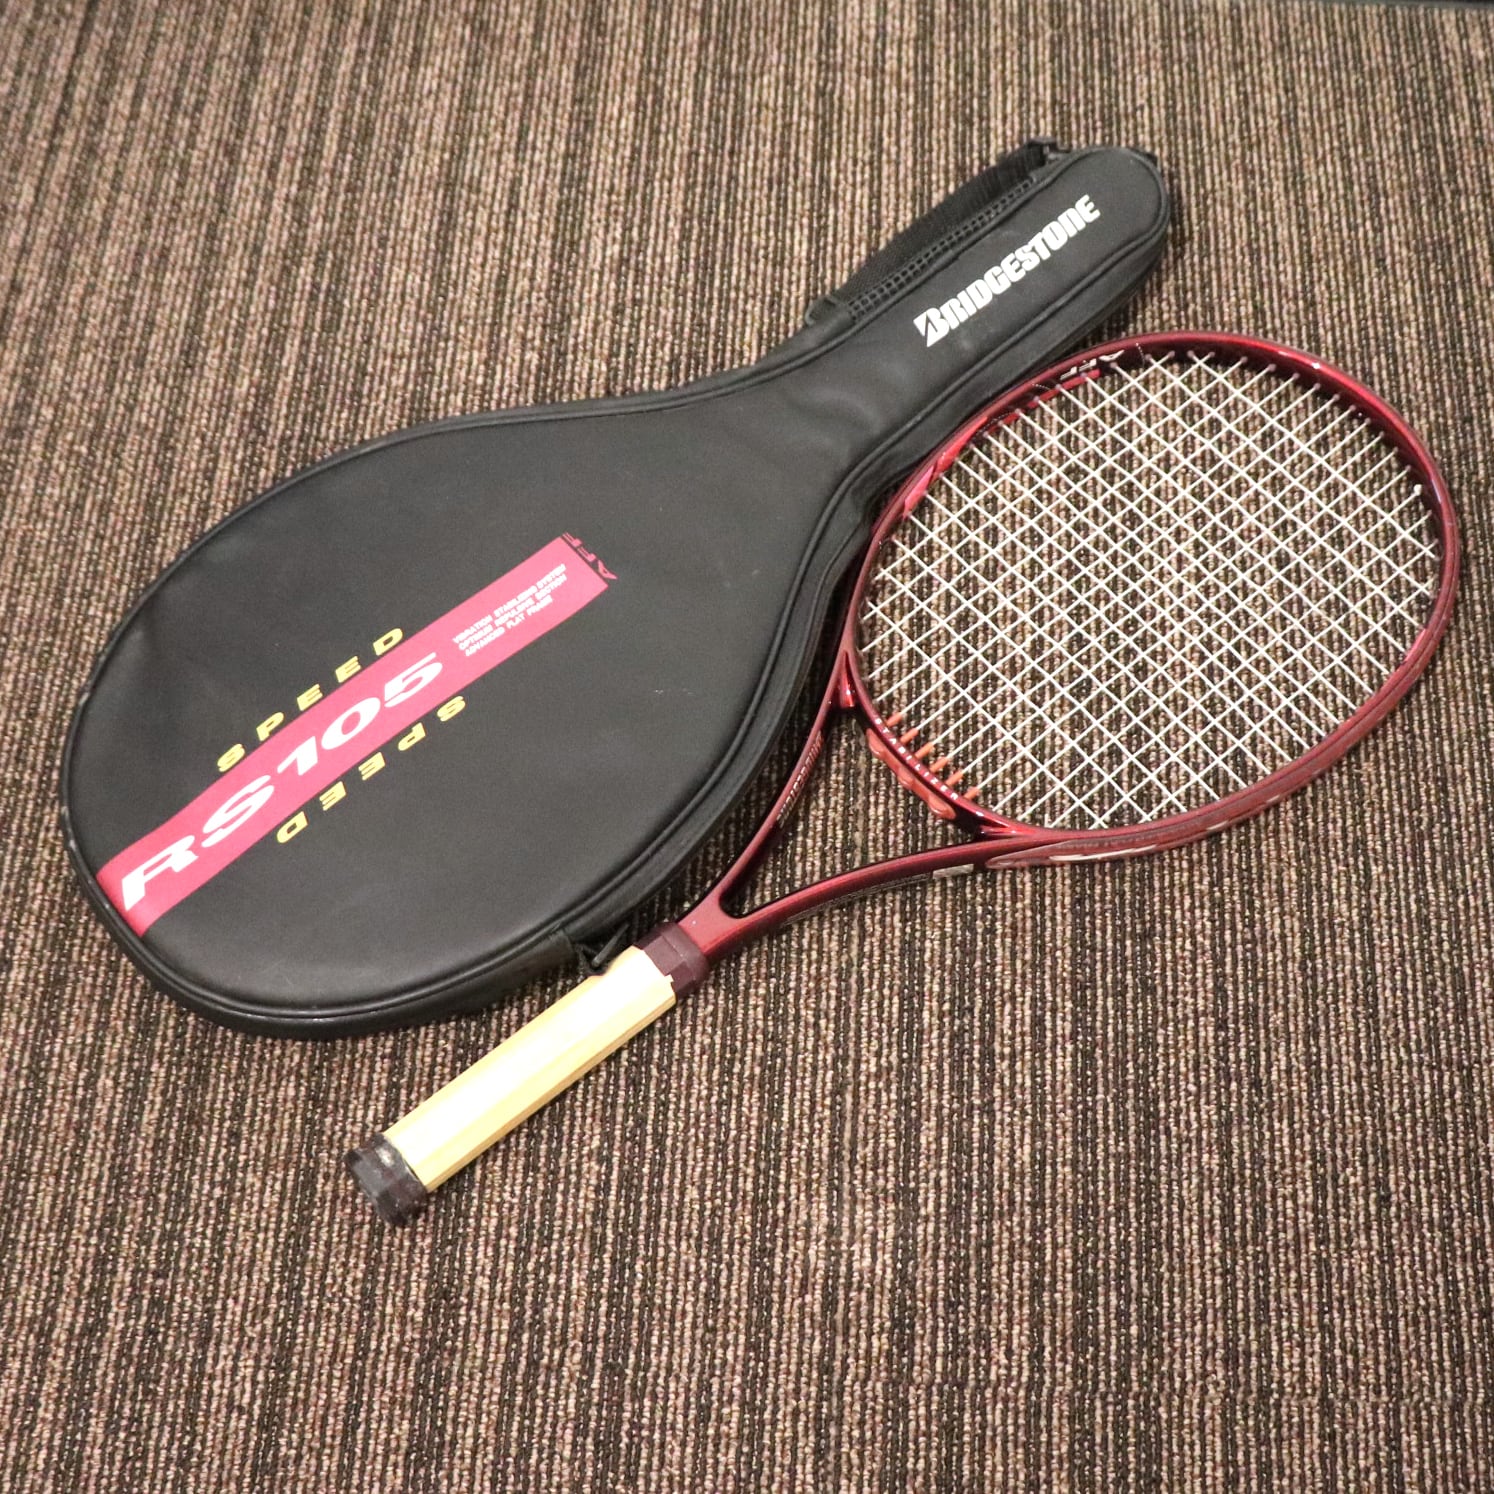 ブリヂストン・硬式テニスラケット・RS105・No.200926-180・梱包サイズ ...